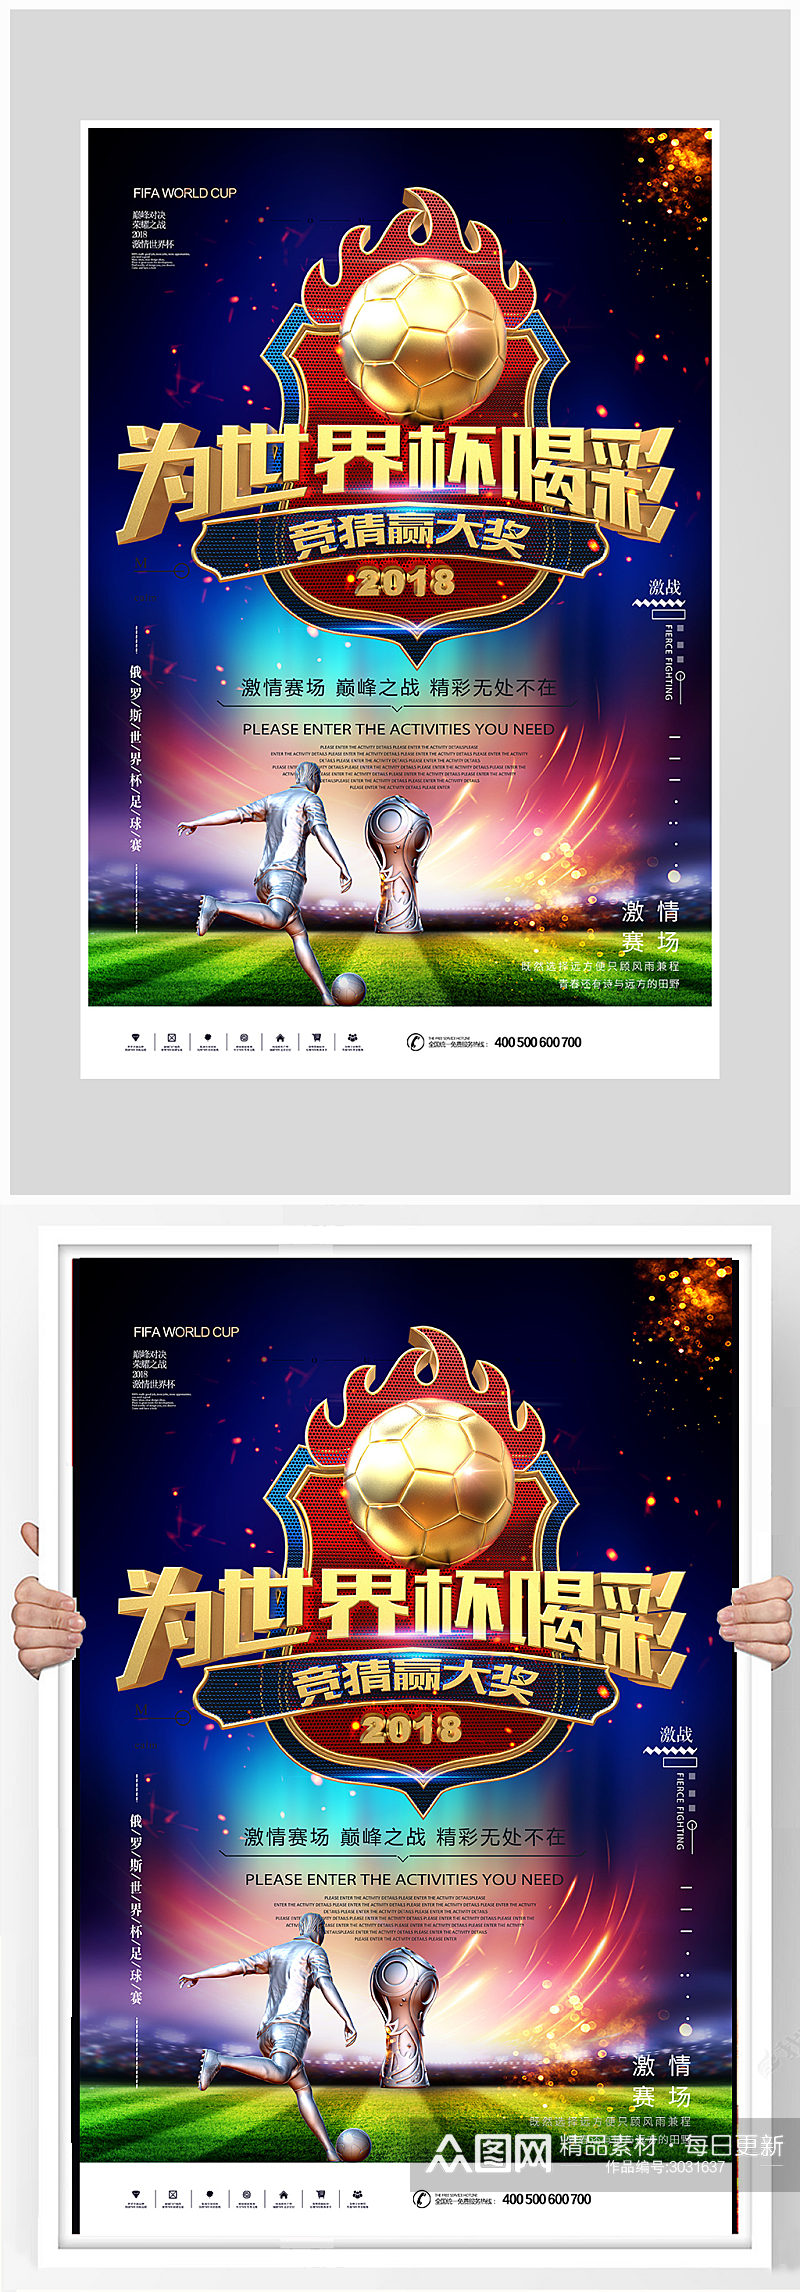 为世界杯喝彩足球比赛海报设计素材